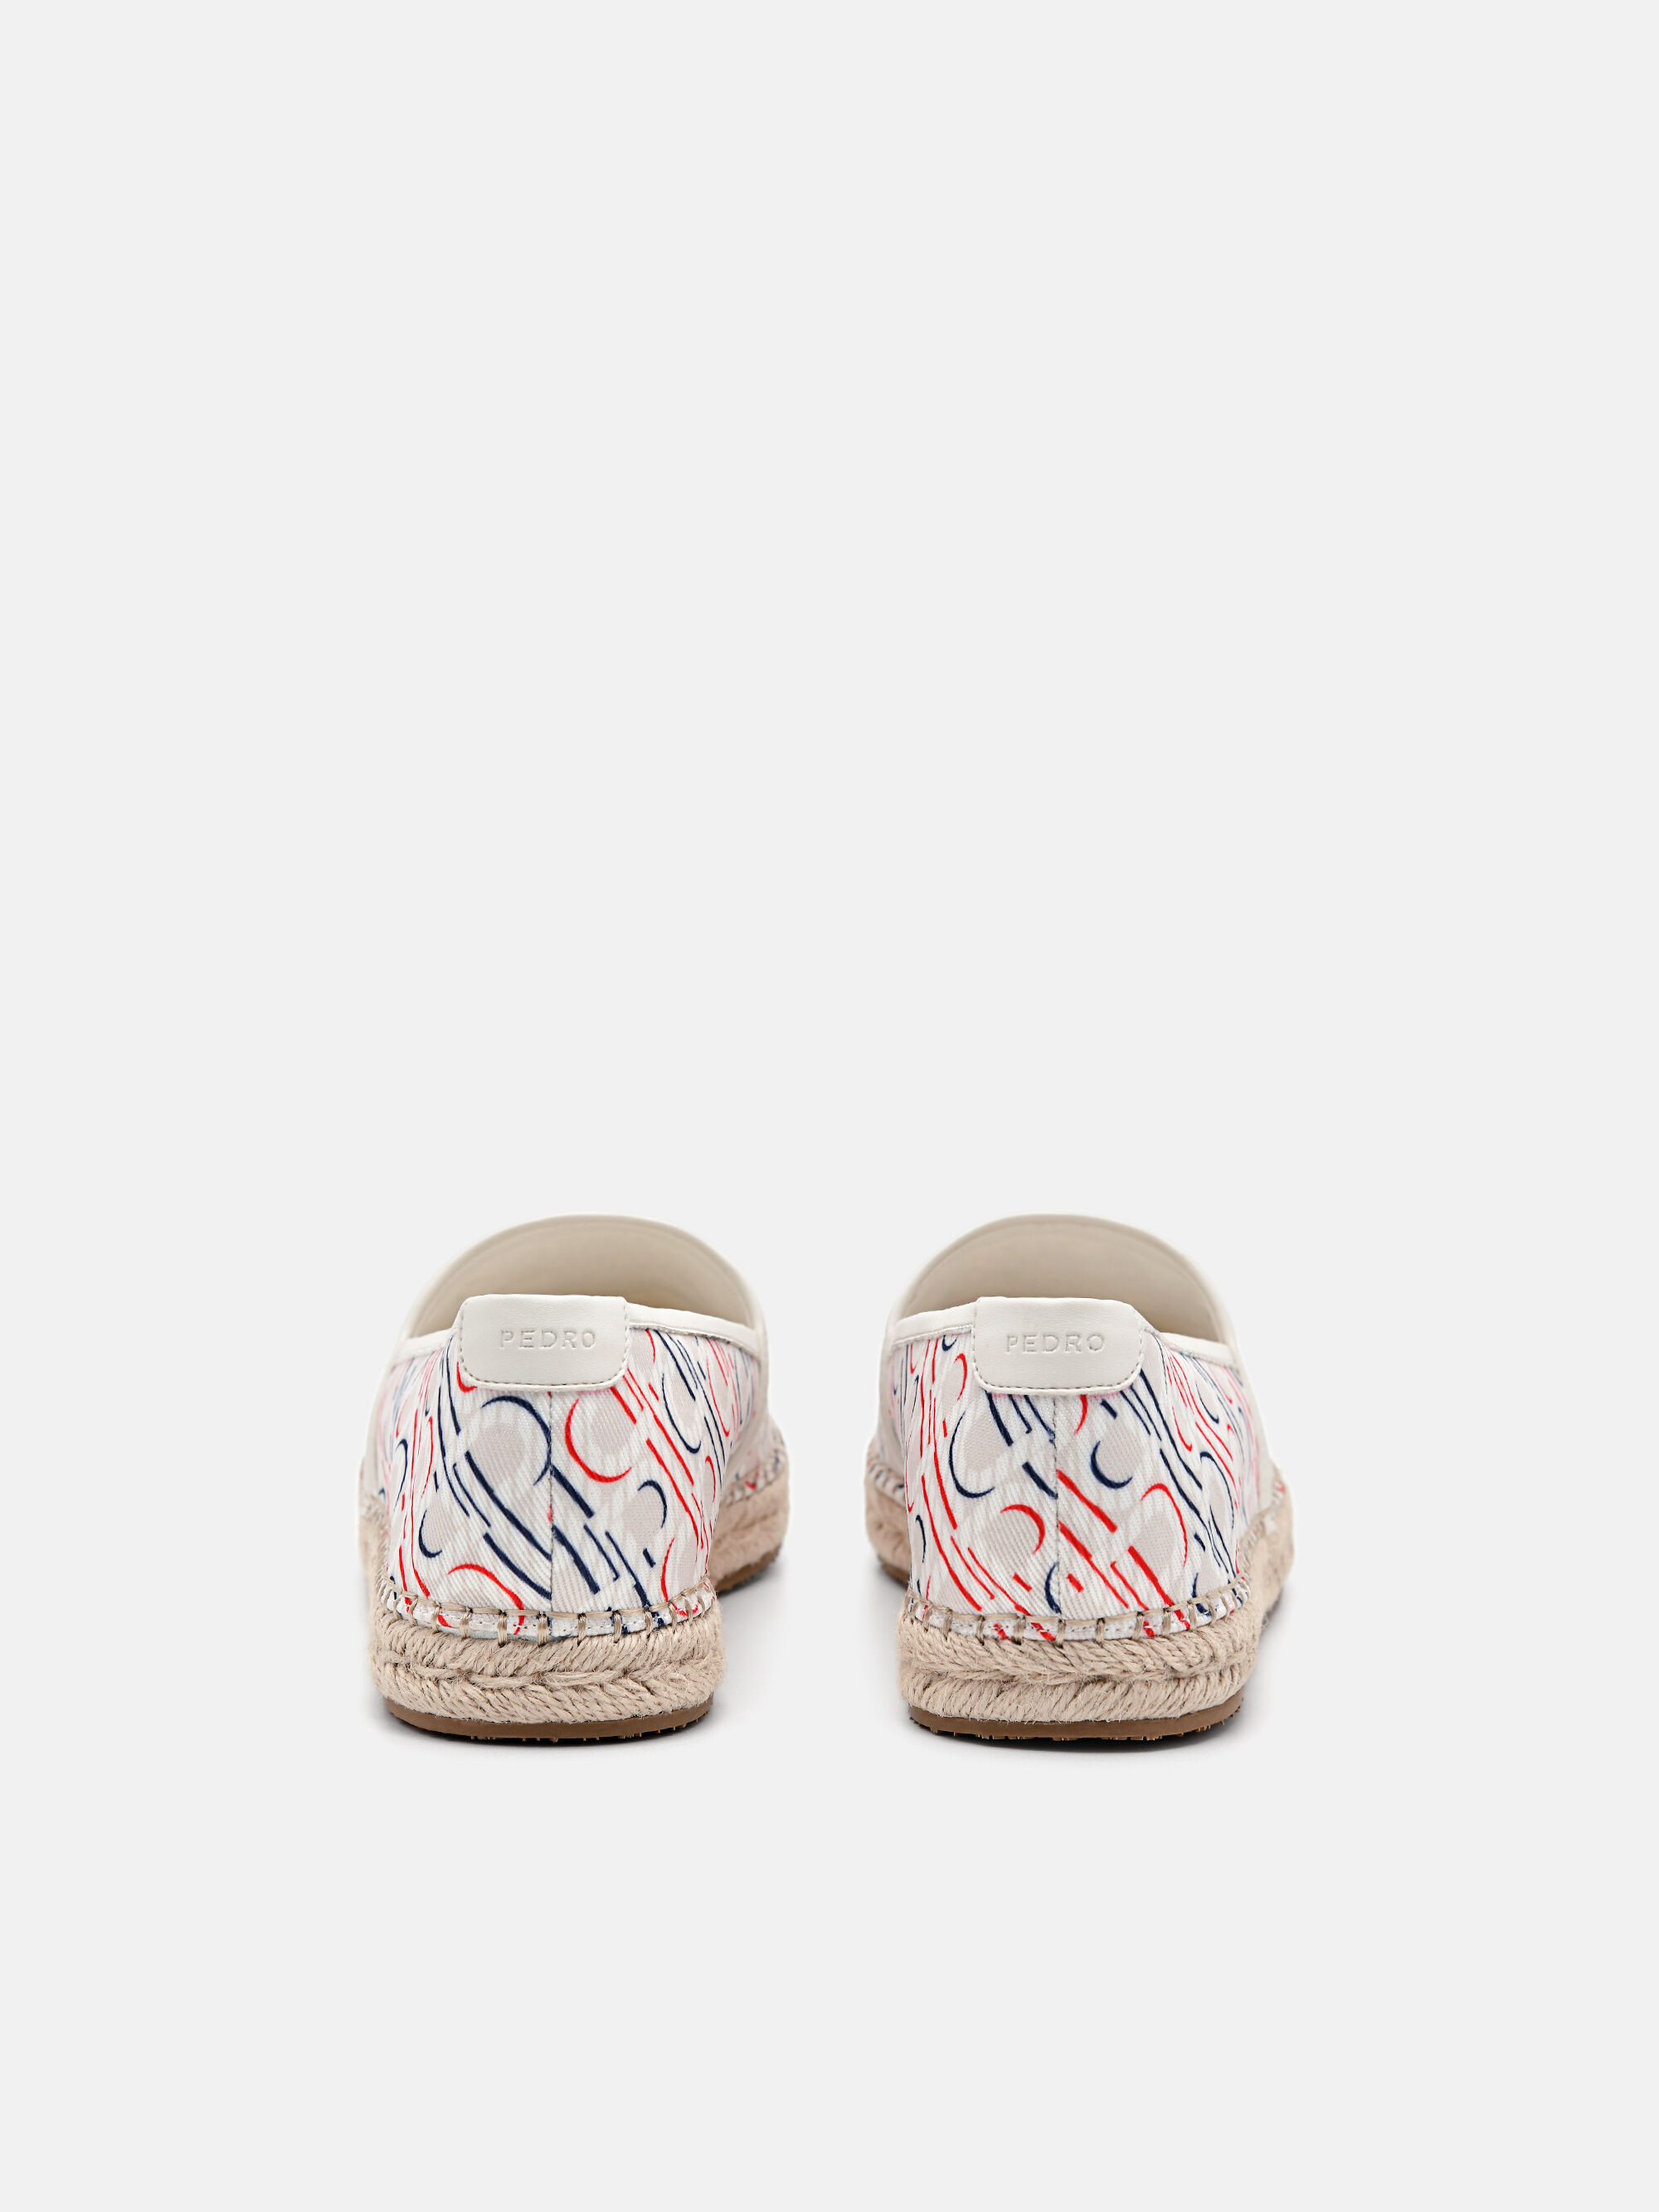 PEDRO Icon Fabric Loafers, Multi